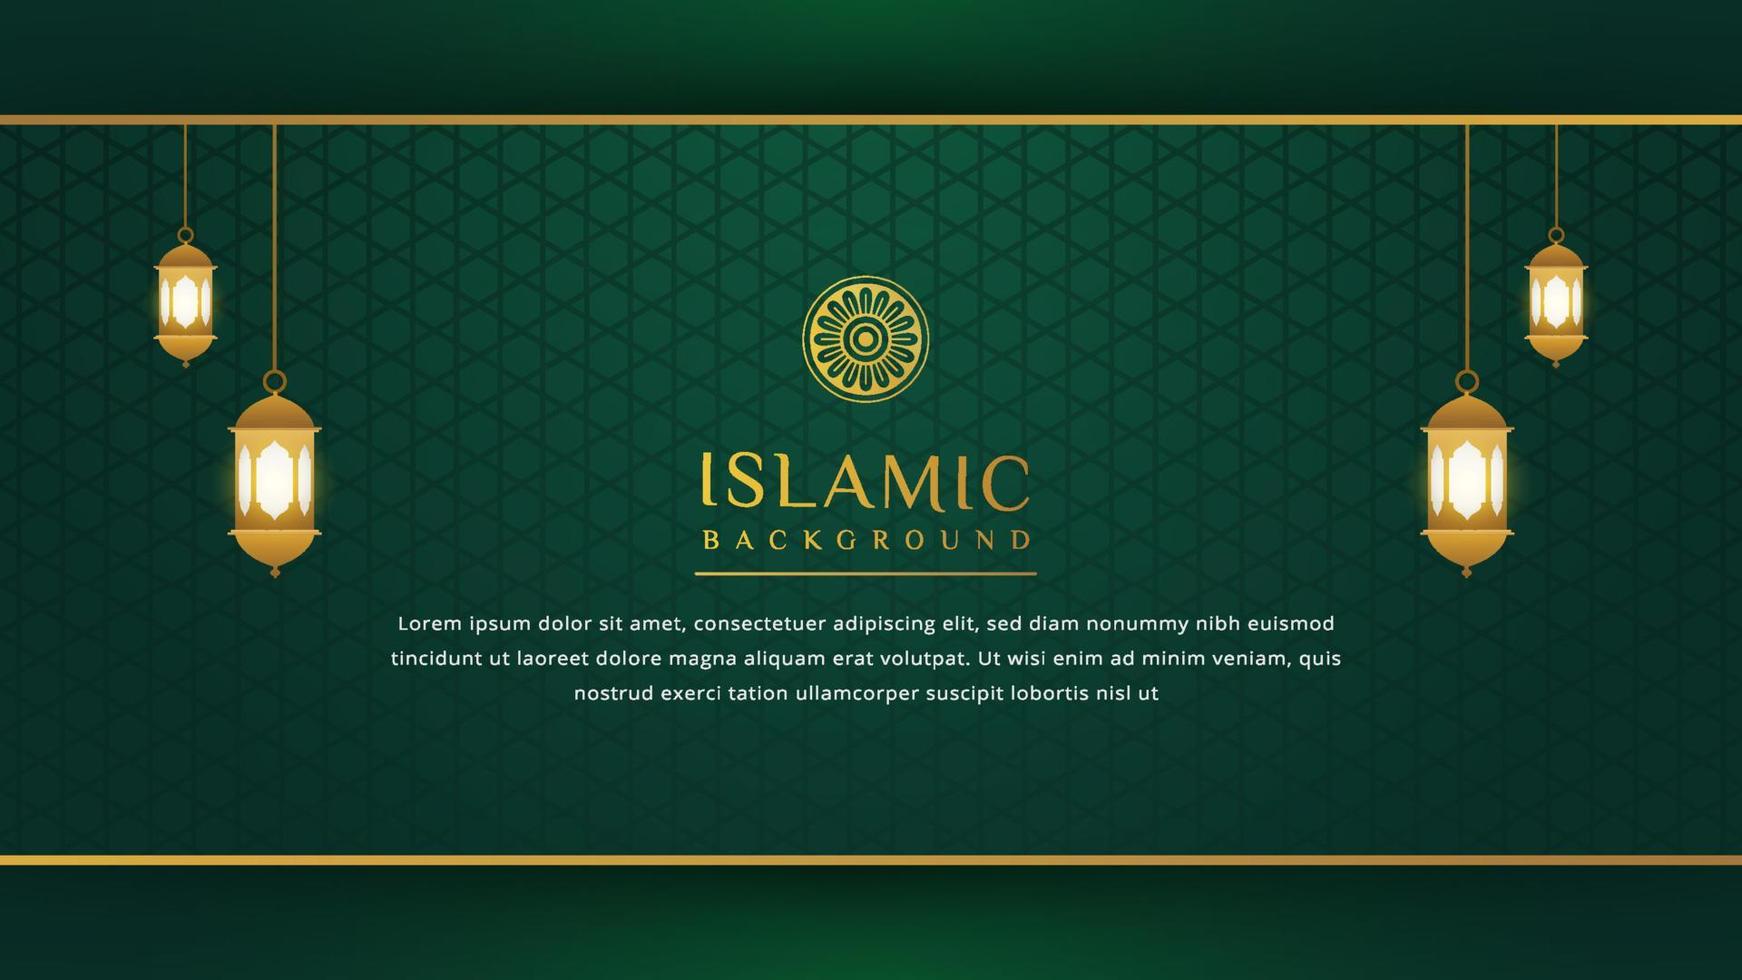 lyx islamisk bakgrund med gyllene prydnad gränsmönster och grön färg, ramadan bakgrundskoncept vektor